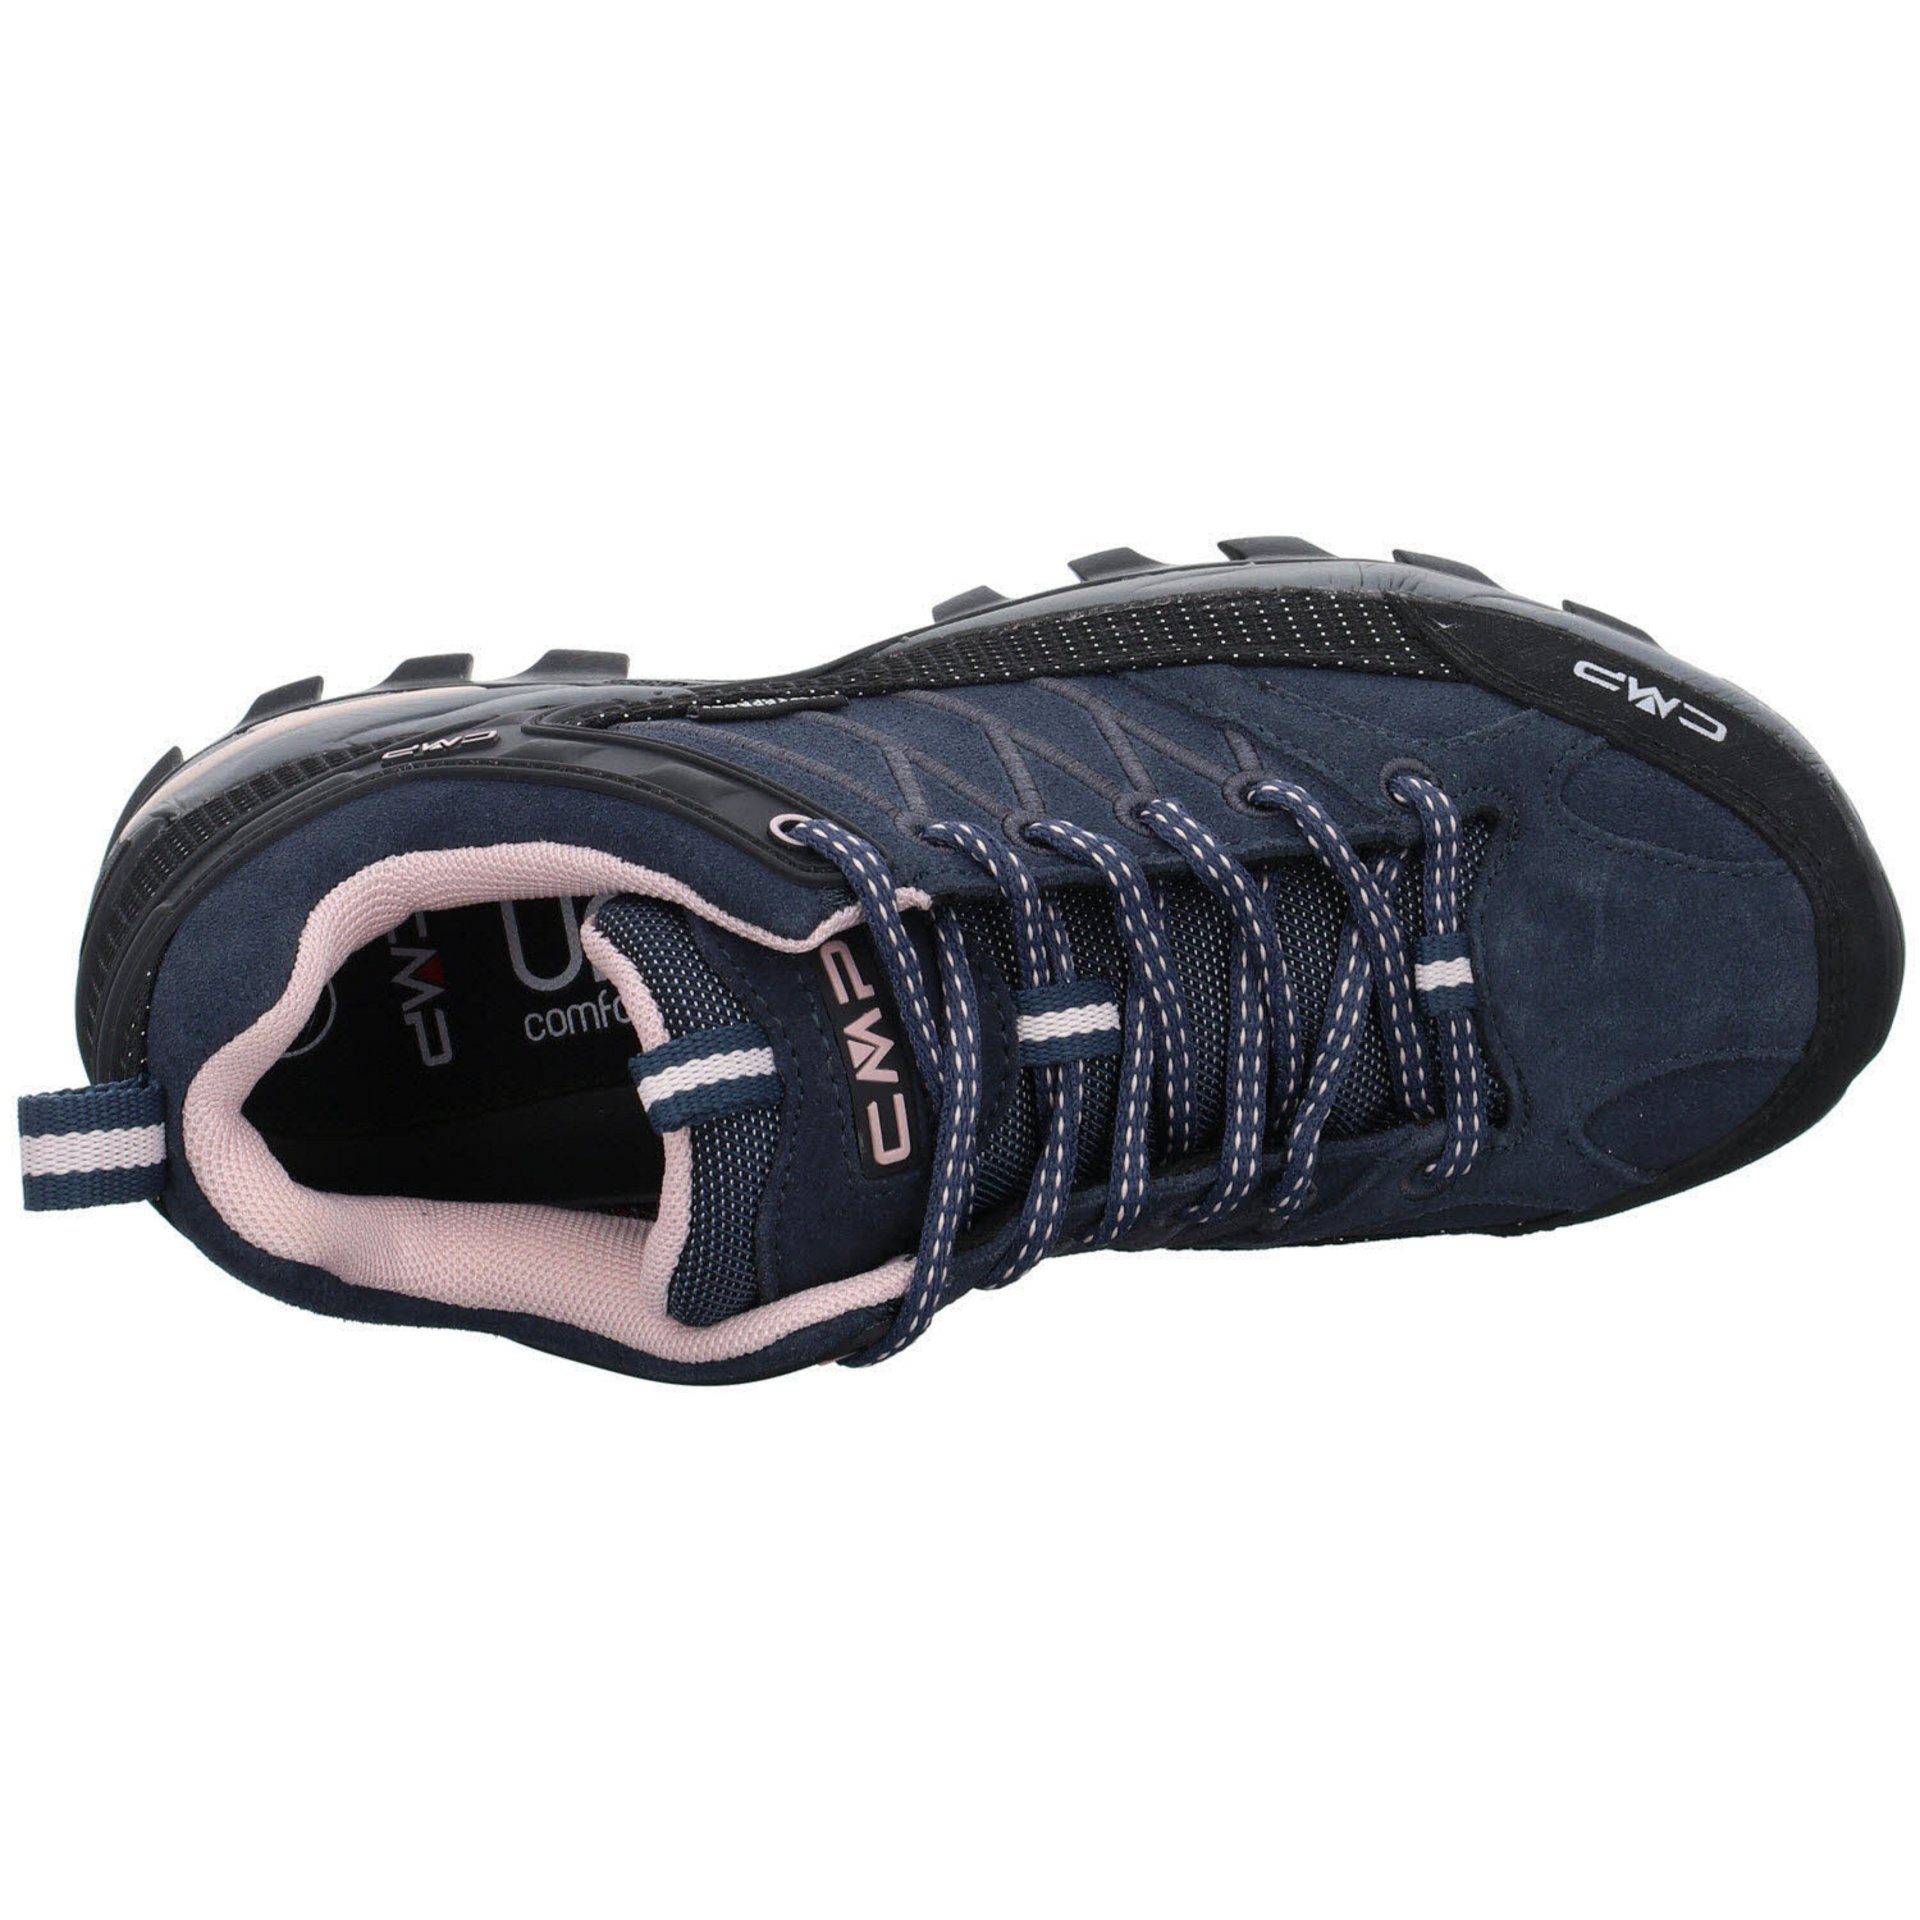 (201) Low Schuhe Damen CMP Leder-/Textilkombination Riegel Outdoorschuh anthrazit Outdoorschuh Outdoor